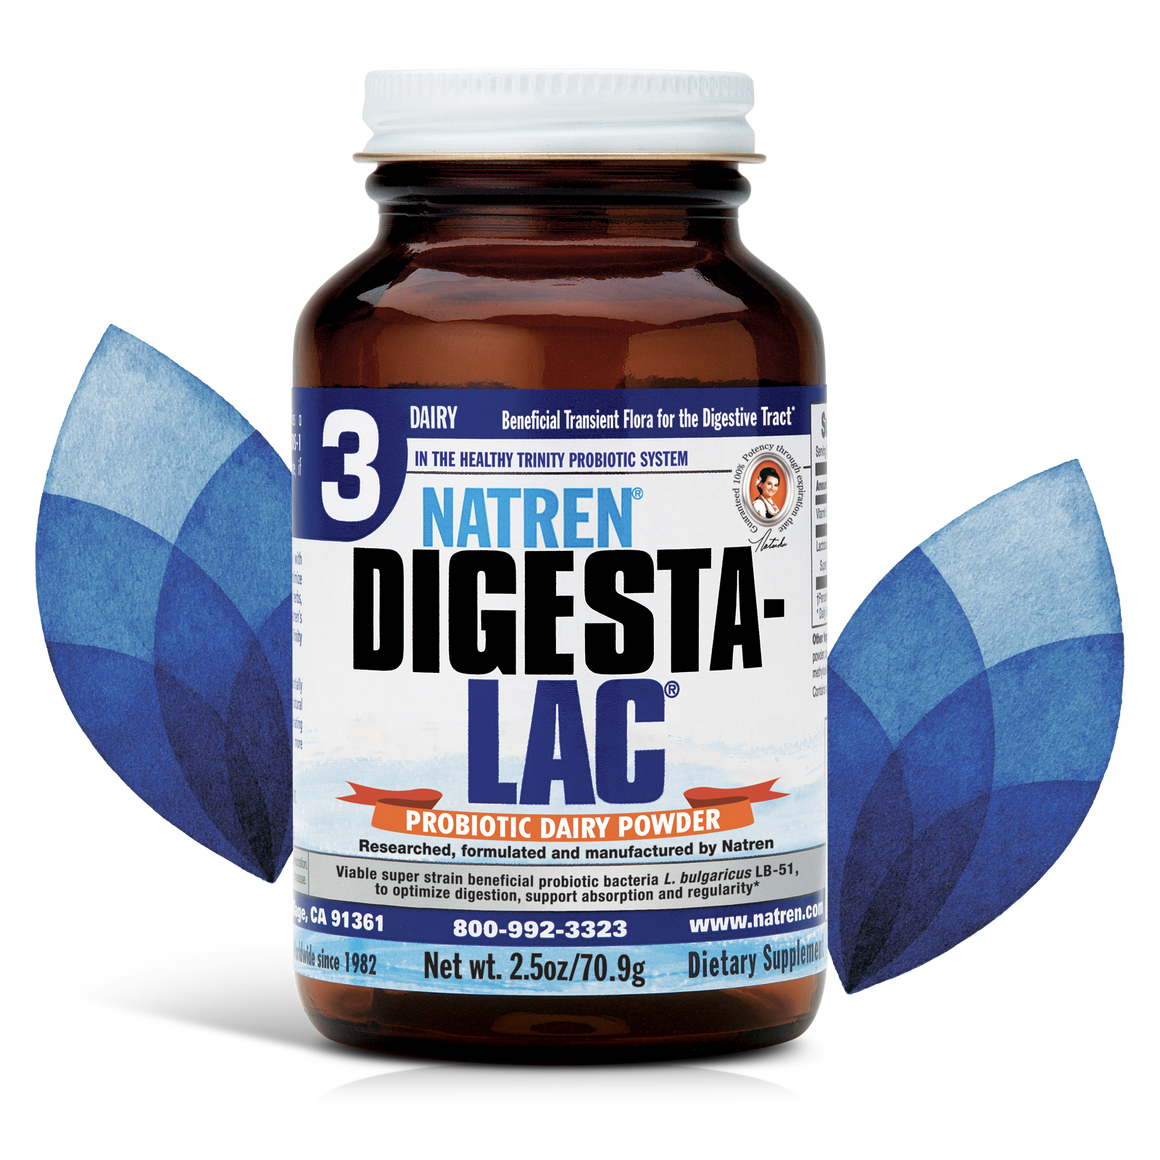 DIGESTA-LAC - Powder